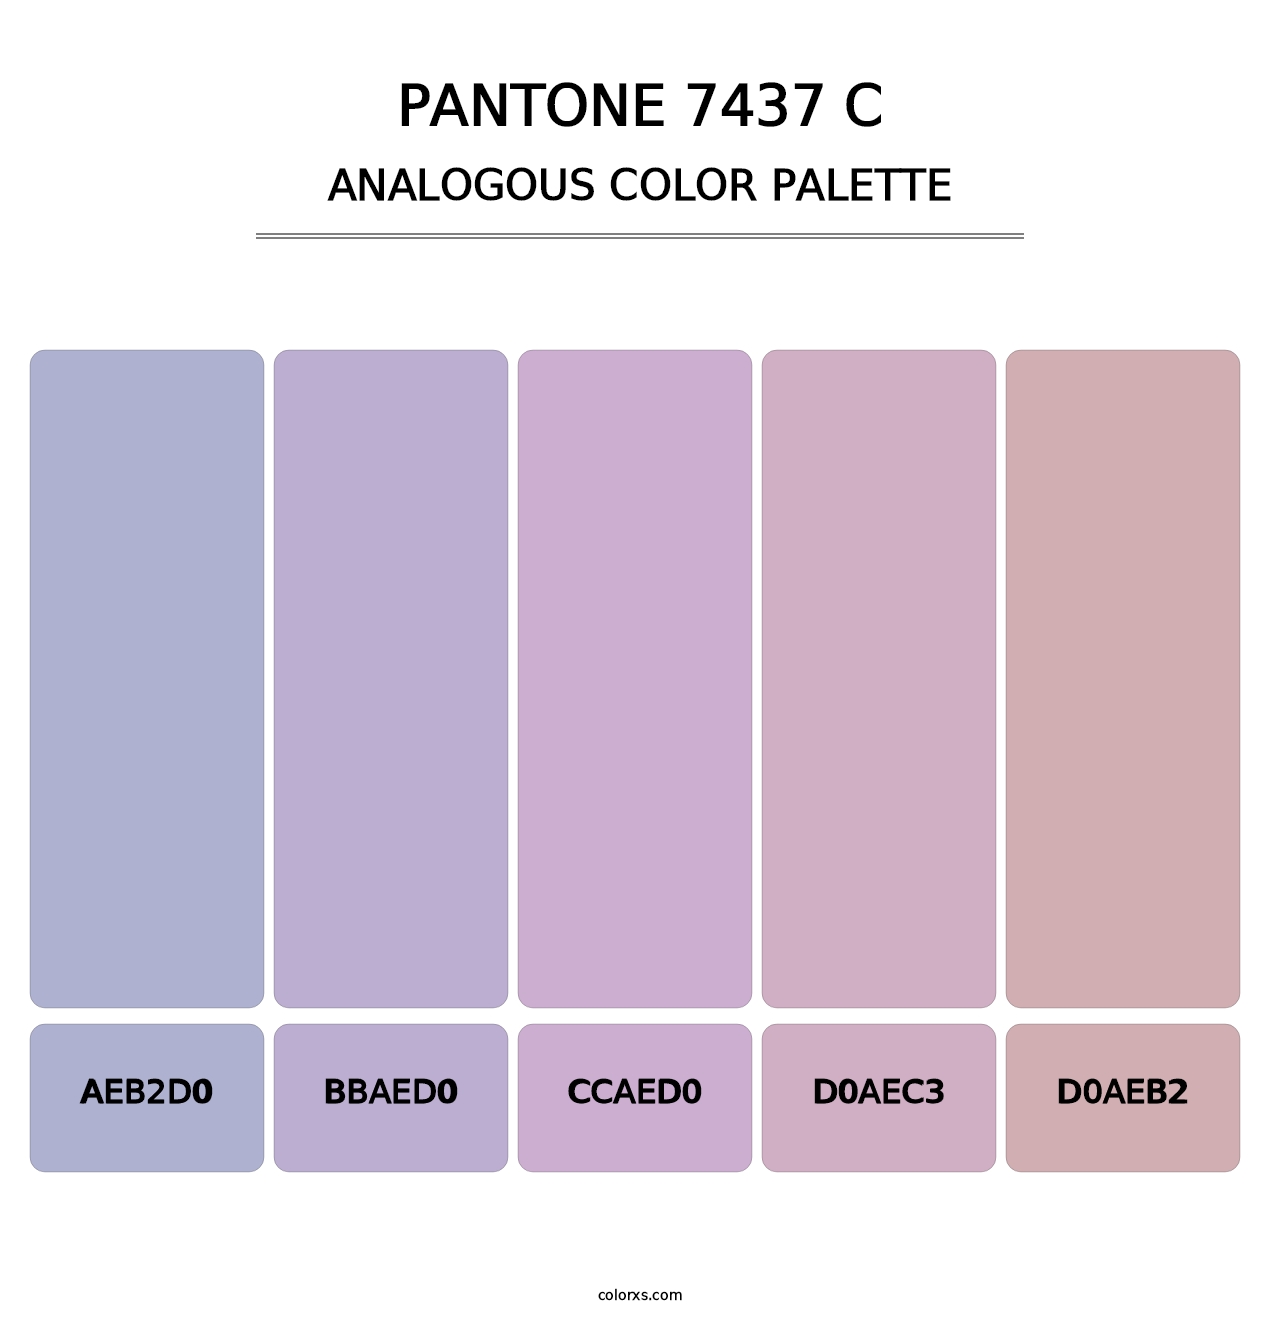 PANTONE 7437 C - Analogous Color Palette